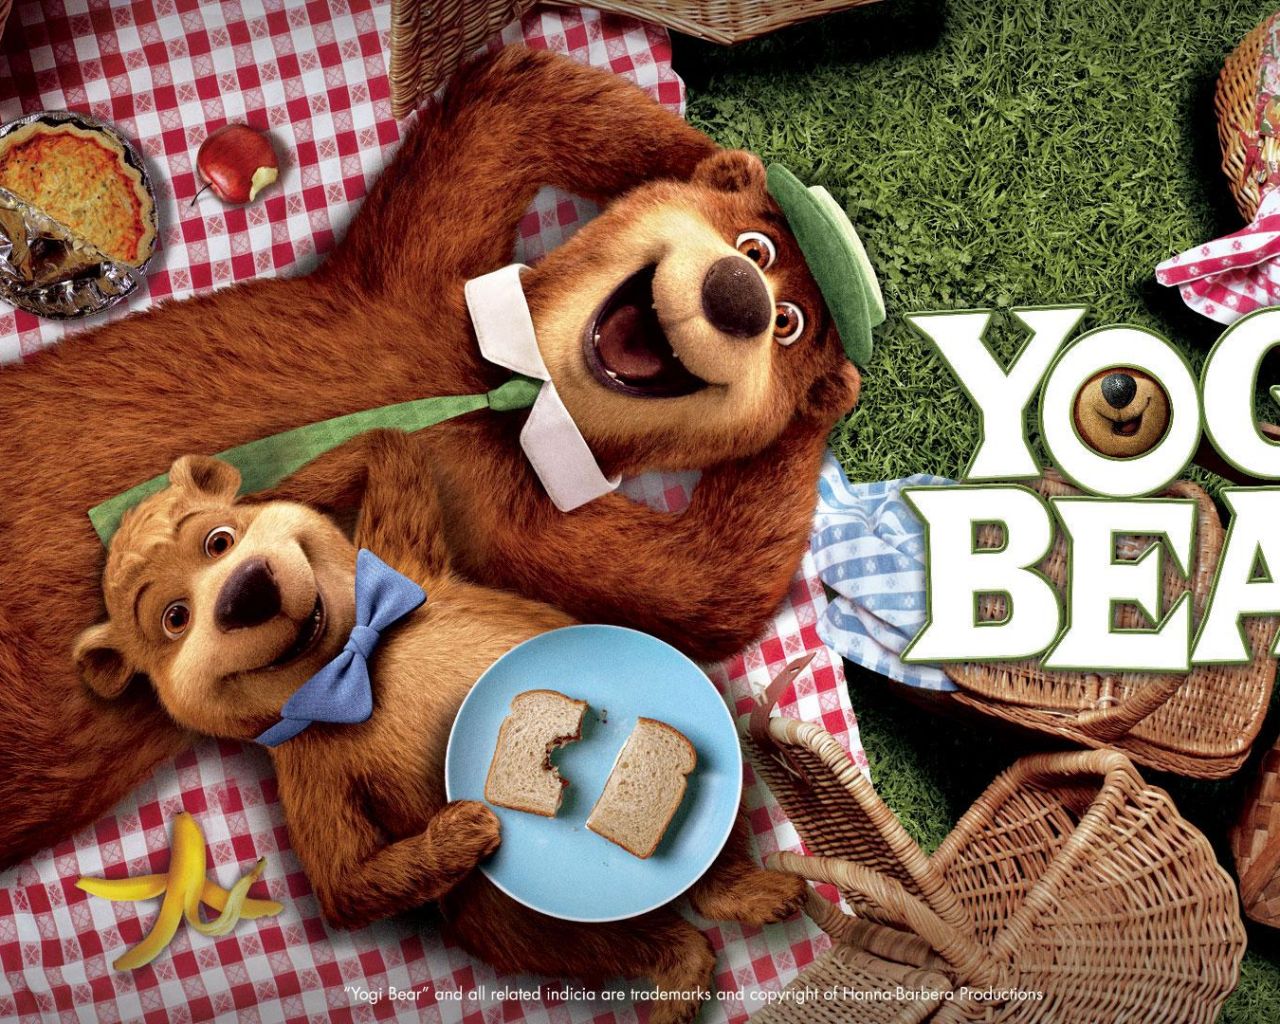 Фильм Медведь Йоги | Yogi Bear - лучшие обои для рабочего стола